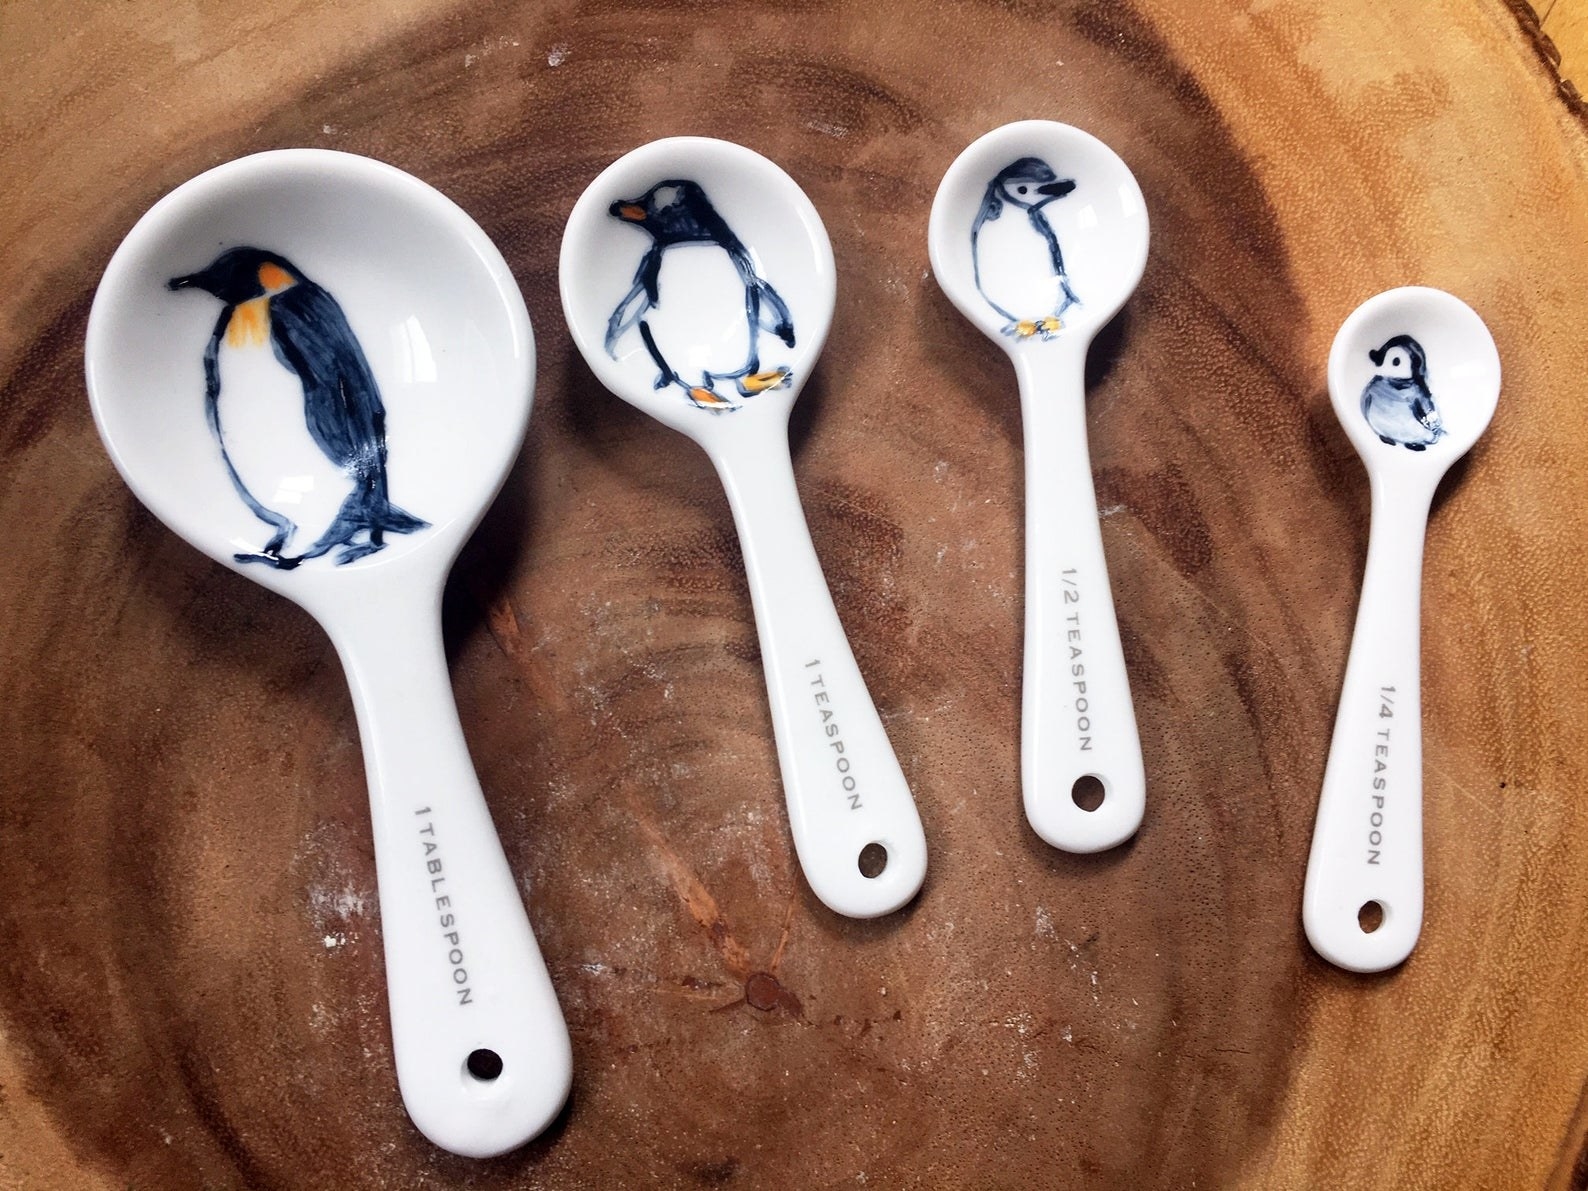 White porcelain spoons for measuring 1 tablespoon, 1 teaspoon, 1/2 teaspoon, and 1/4 teaspoon